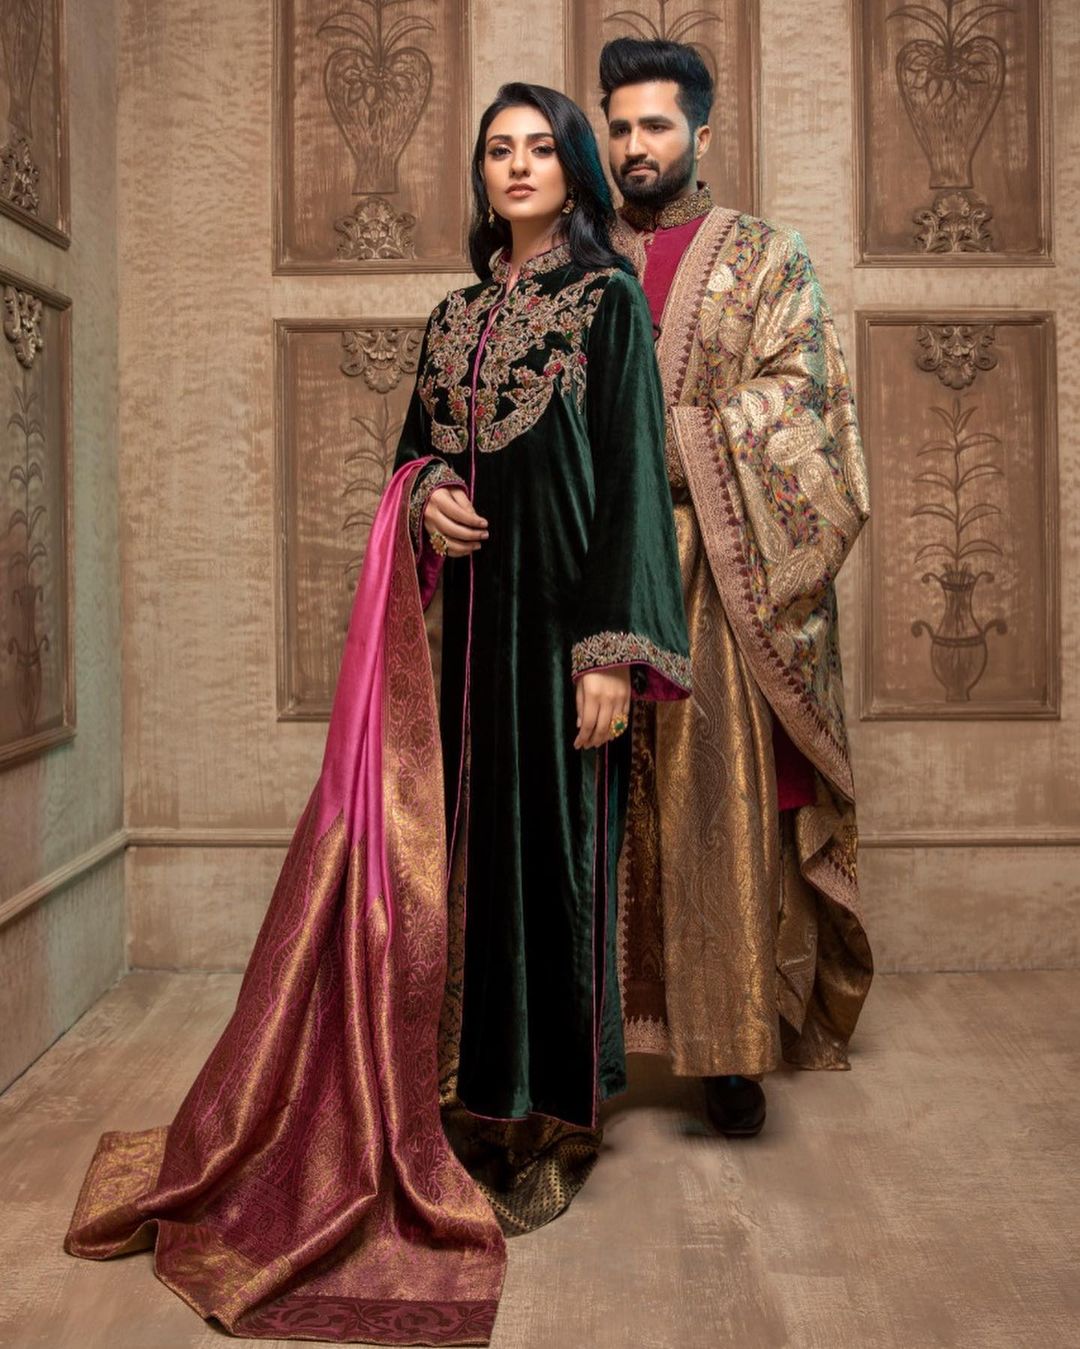 Beautiful Couple Sarah Khan and Falak Shabir - Latest Pictures